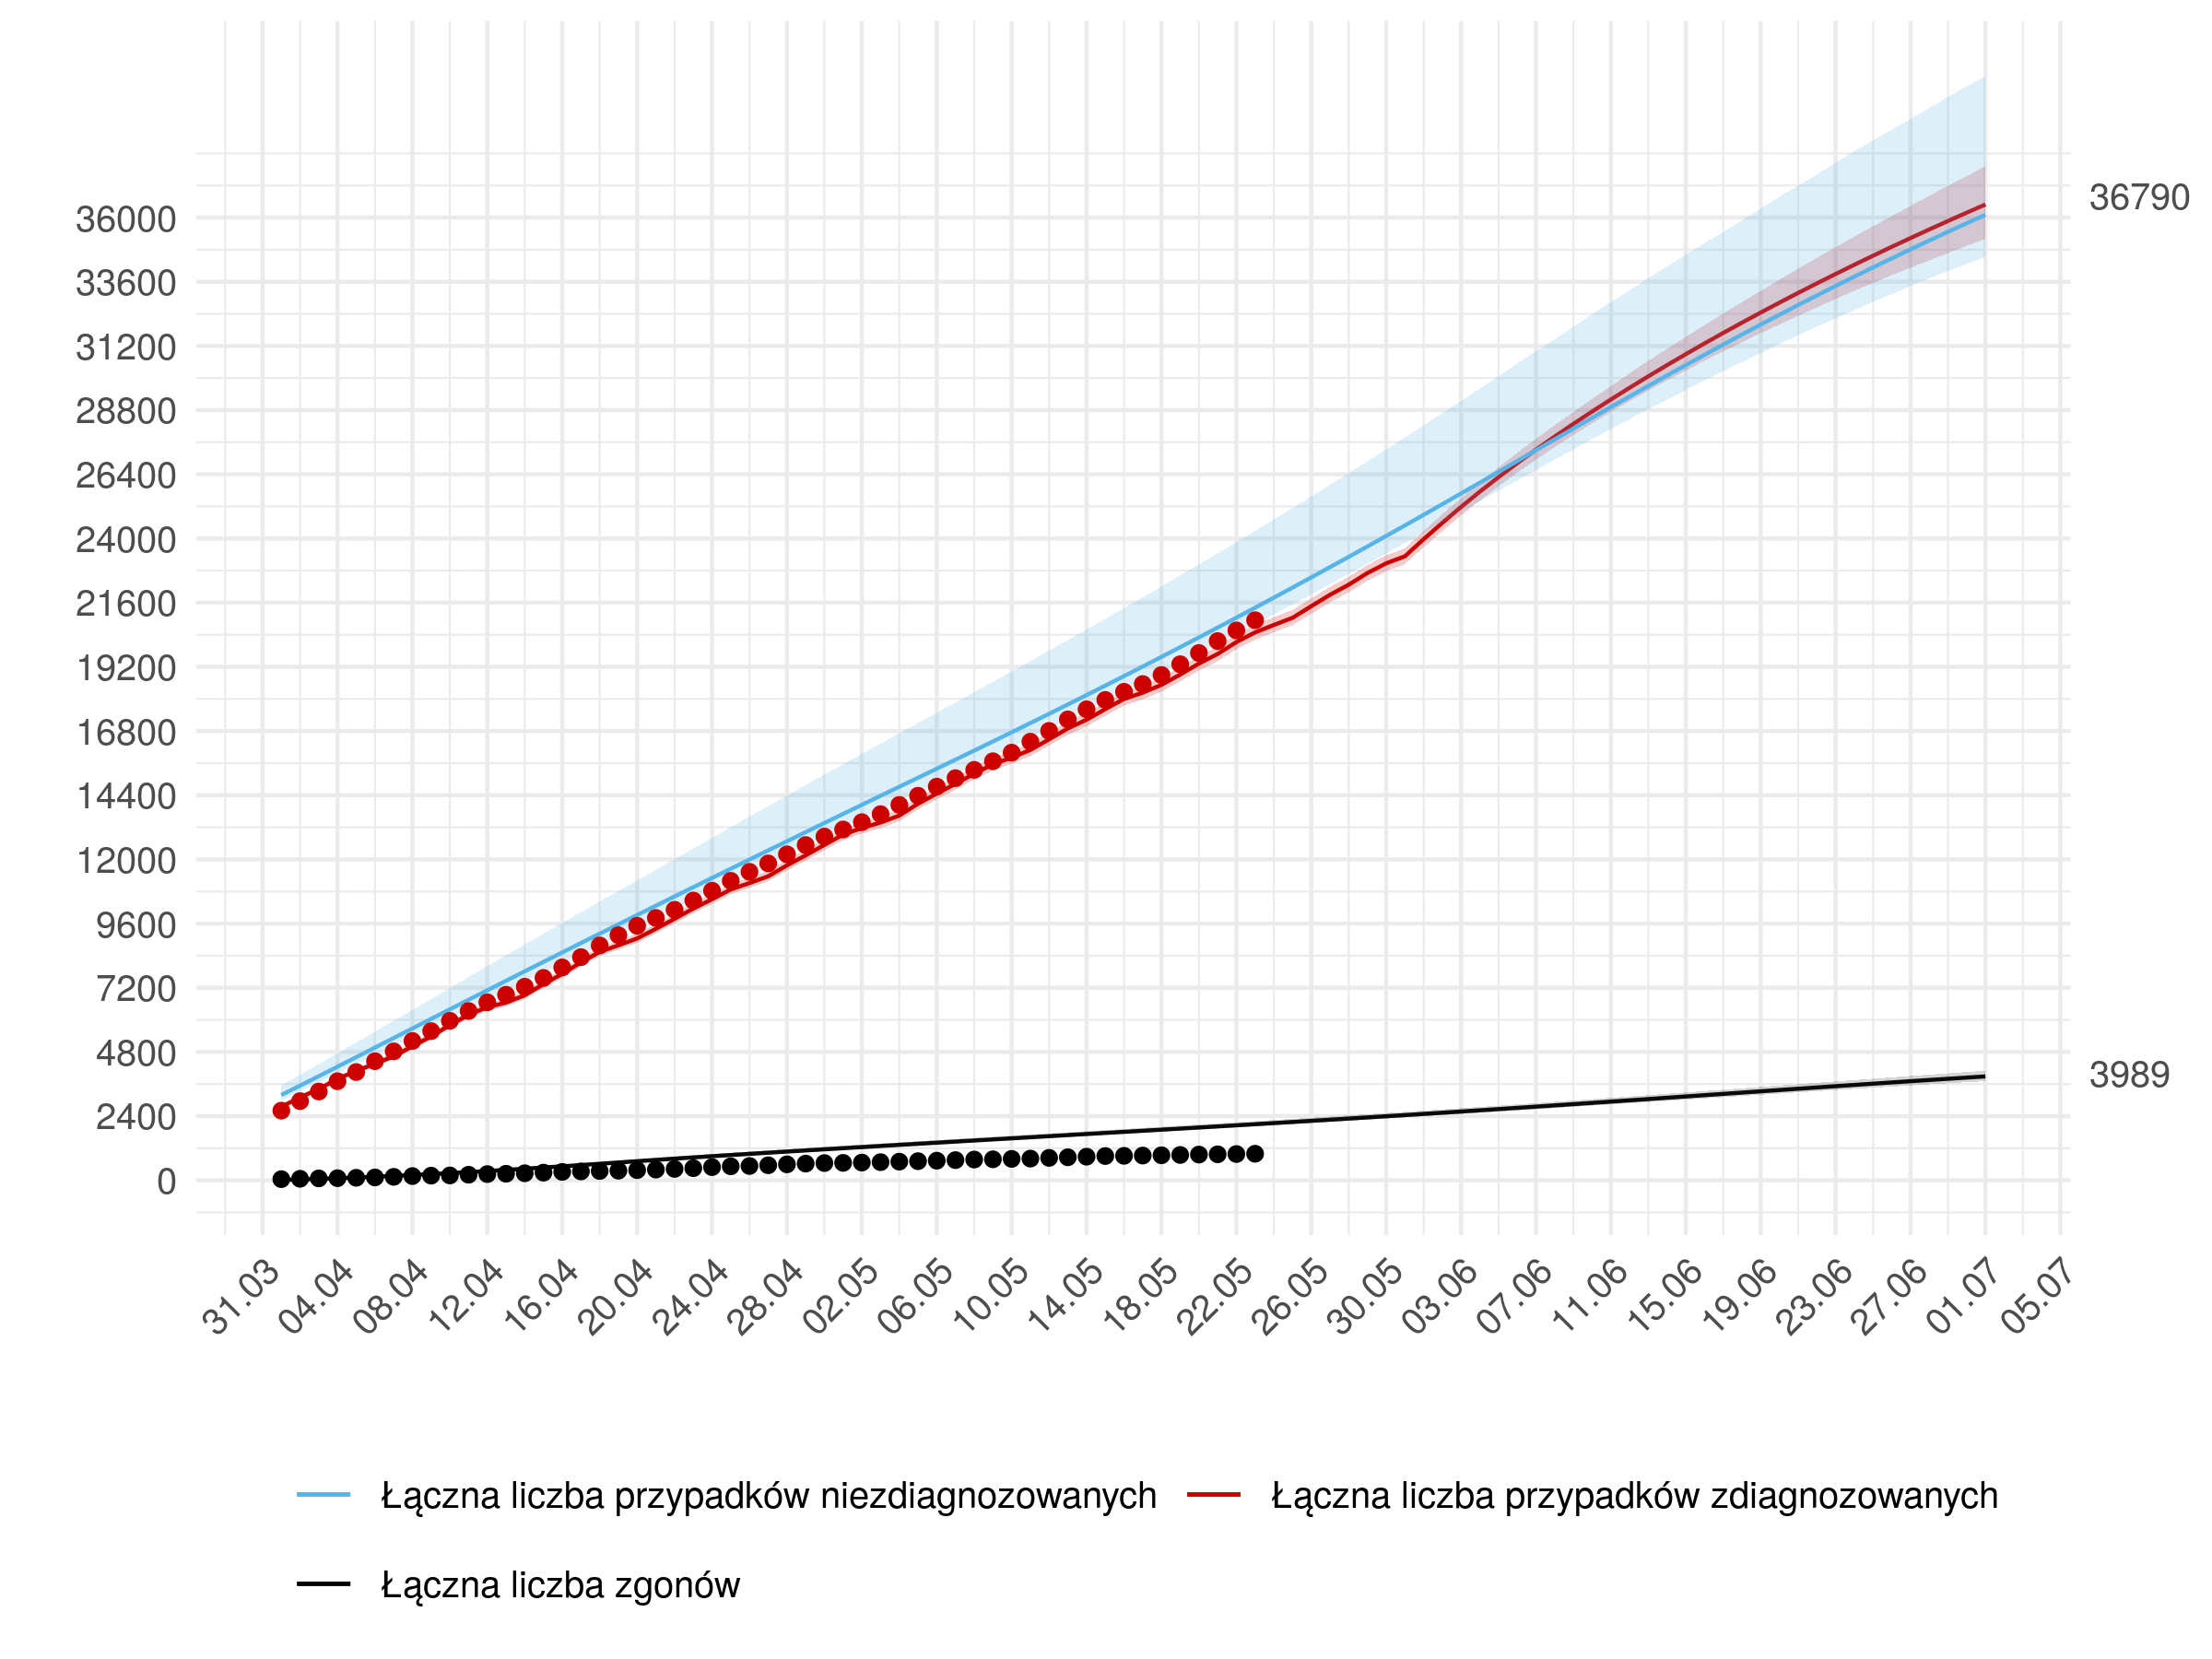 Średnioterminowa prognoza łącznej liczby rozpoznań zdiagnozowanych (czerwona linia) i niezdiagnozowanych (niebieska) w modelu stochastycznym. W dniach 31 maja - 1 lipca przyjęto wzrost liczby testów opisany. Na dzień 1 lipca przewidujemy 36 790 z 95% przedziałem ufności  (35456 - 38281).